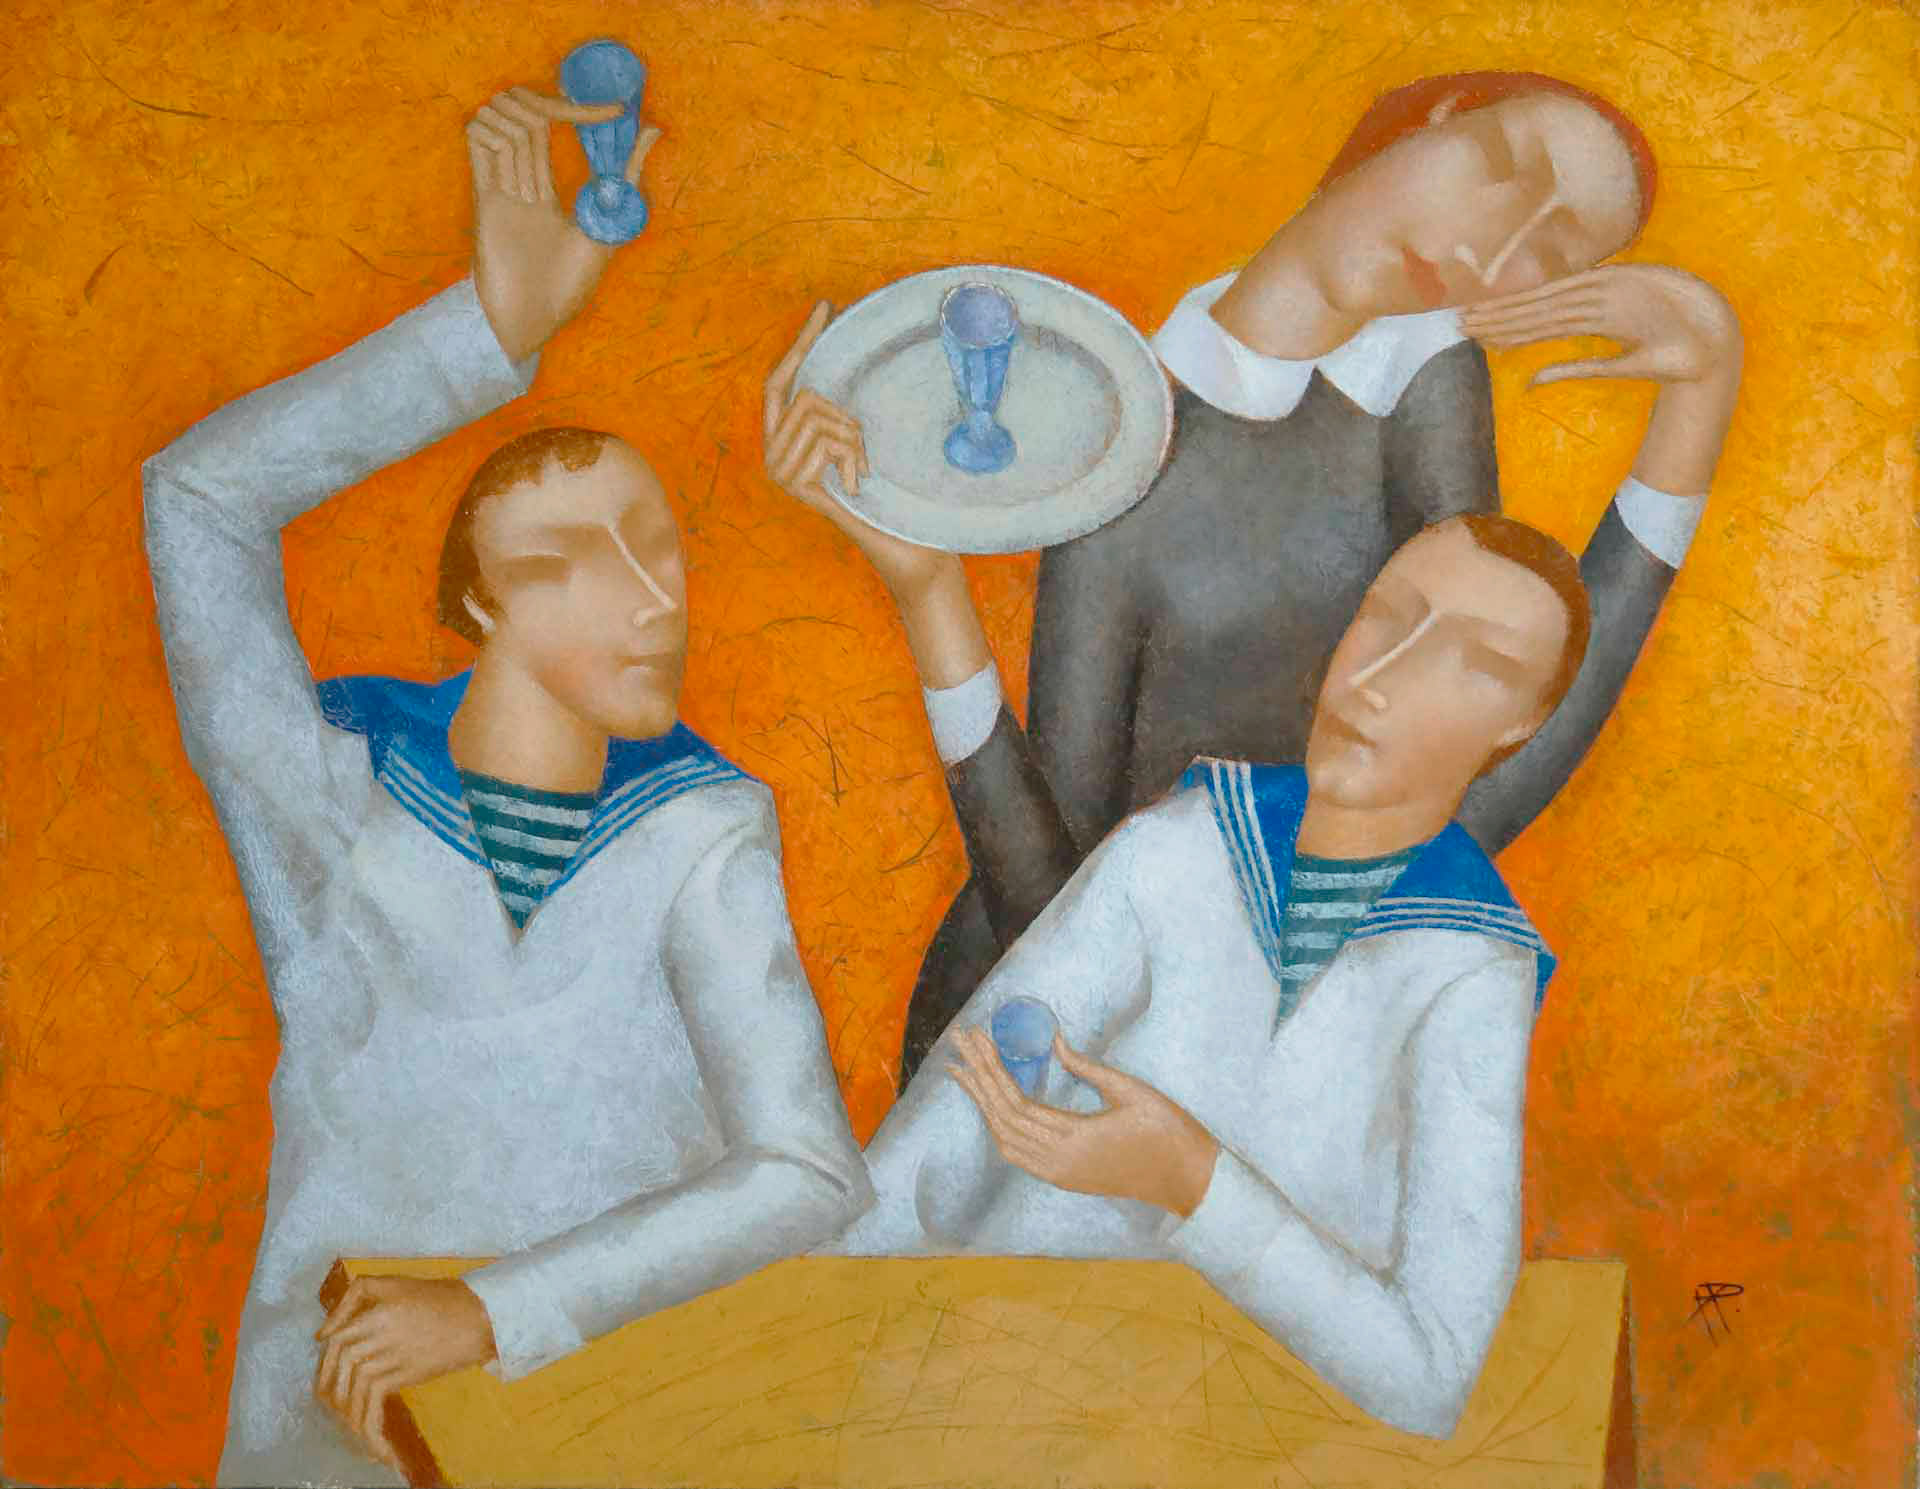 Meeting - 1, Nikolai Reznichenko, Buy the painting Oil